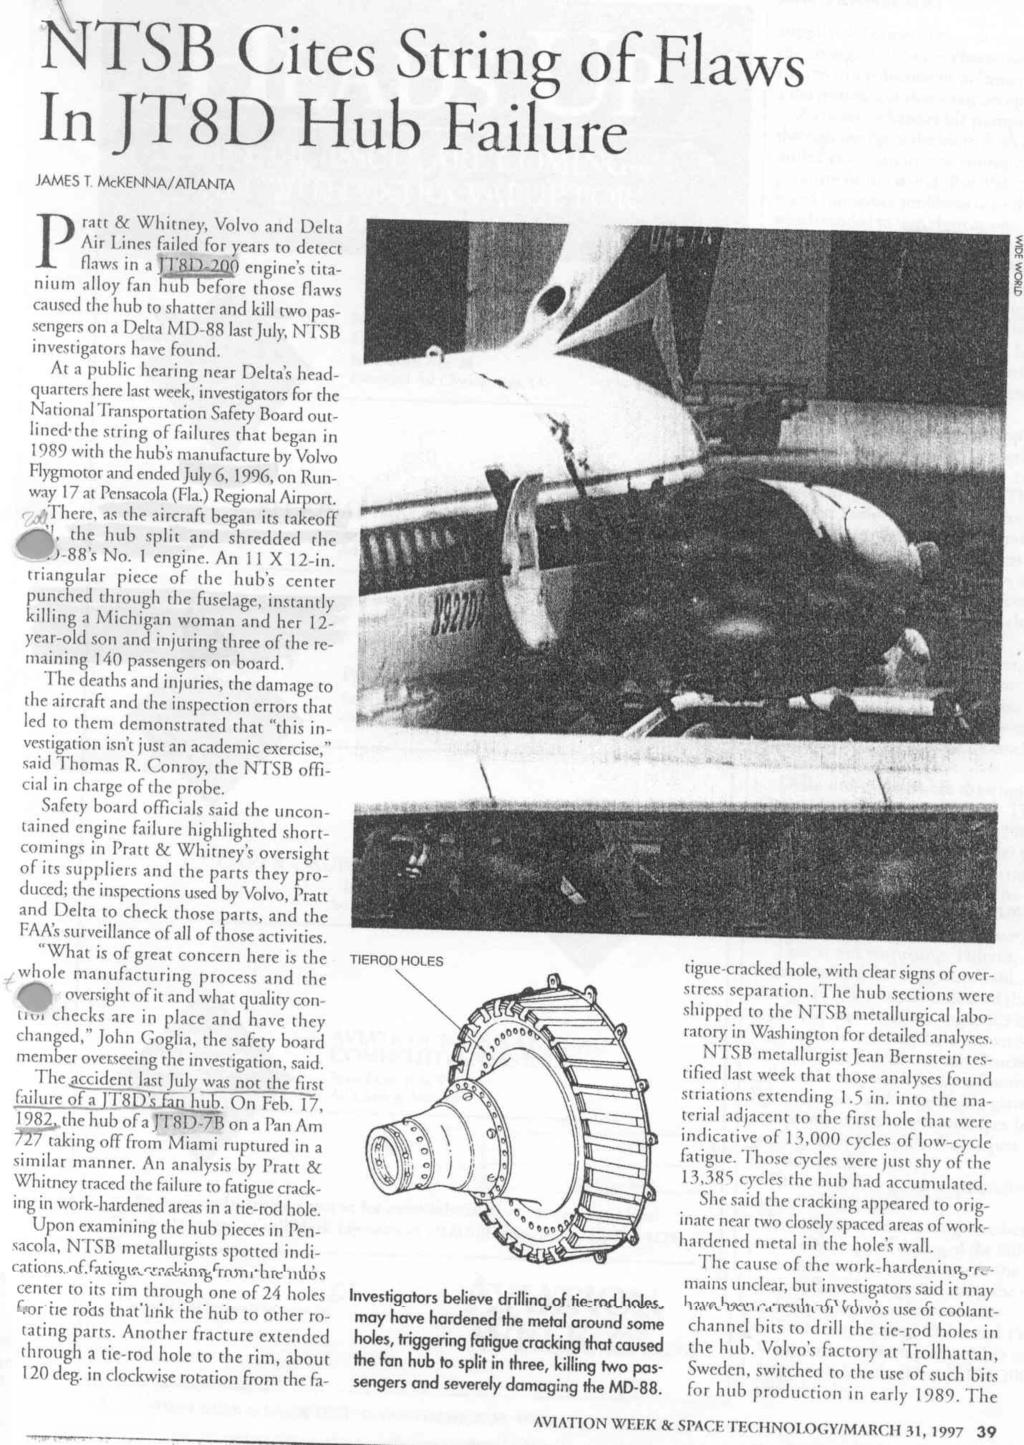 Rottura per LCF PENSACOLA ACCIDENT Luglio 1996 - velivolo MD88 Delta -motore JT8D (PWA) -disco LPC - 13385 voli 2 morti, 3 feriti Causa: